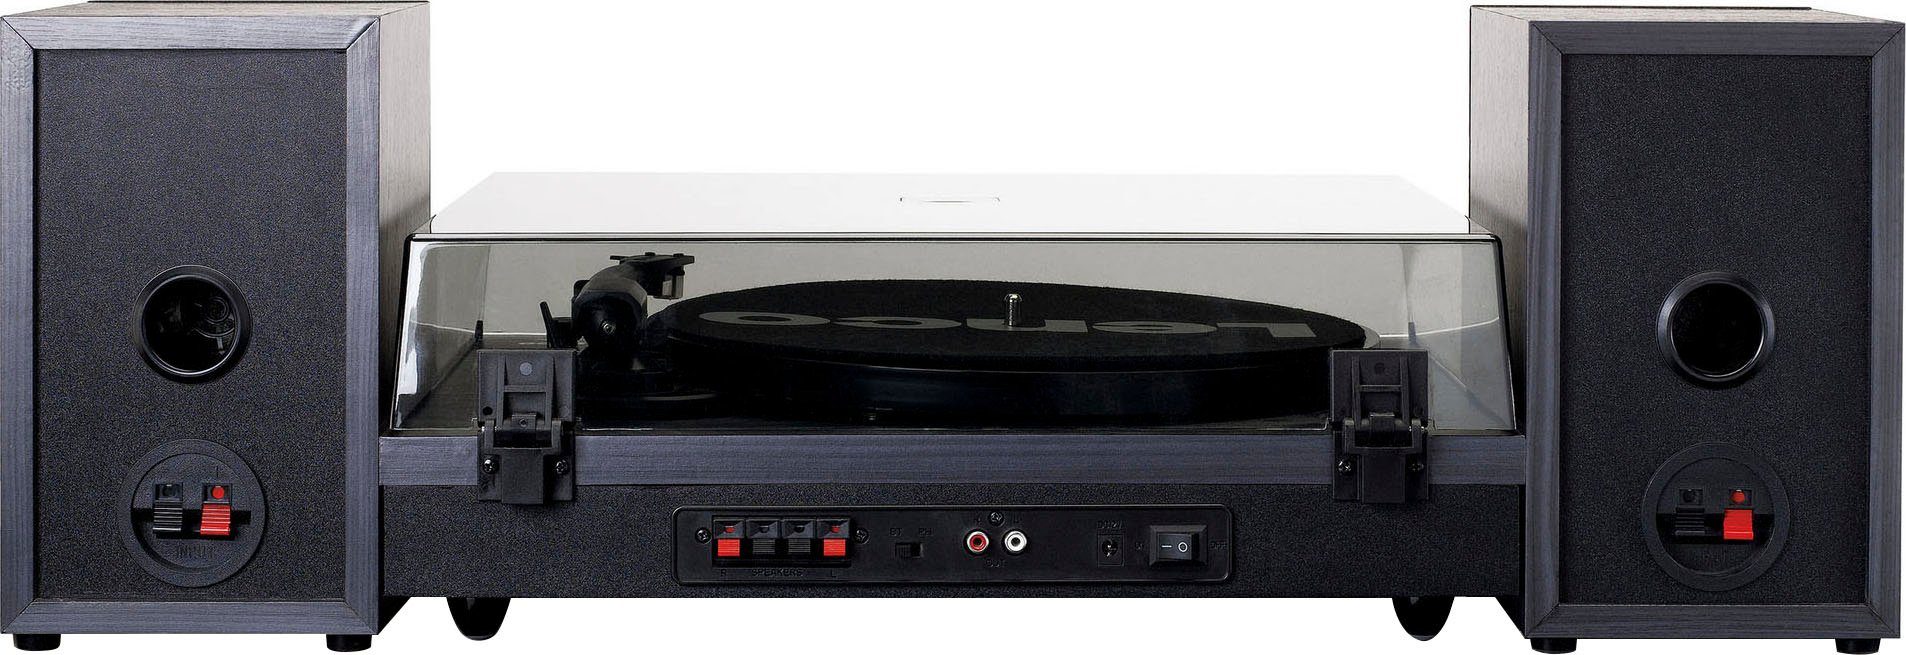 Schwarz ext. Plattenspieler (Riemenantrieb) LS-300BK mit Lautsprechern Lenco Plattenspieler